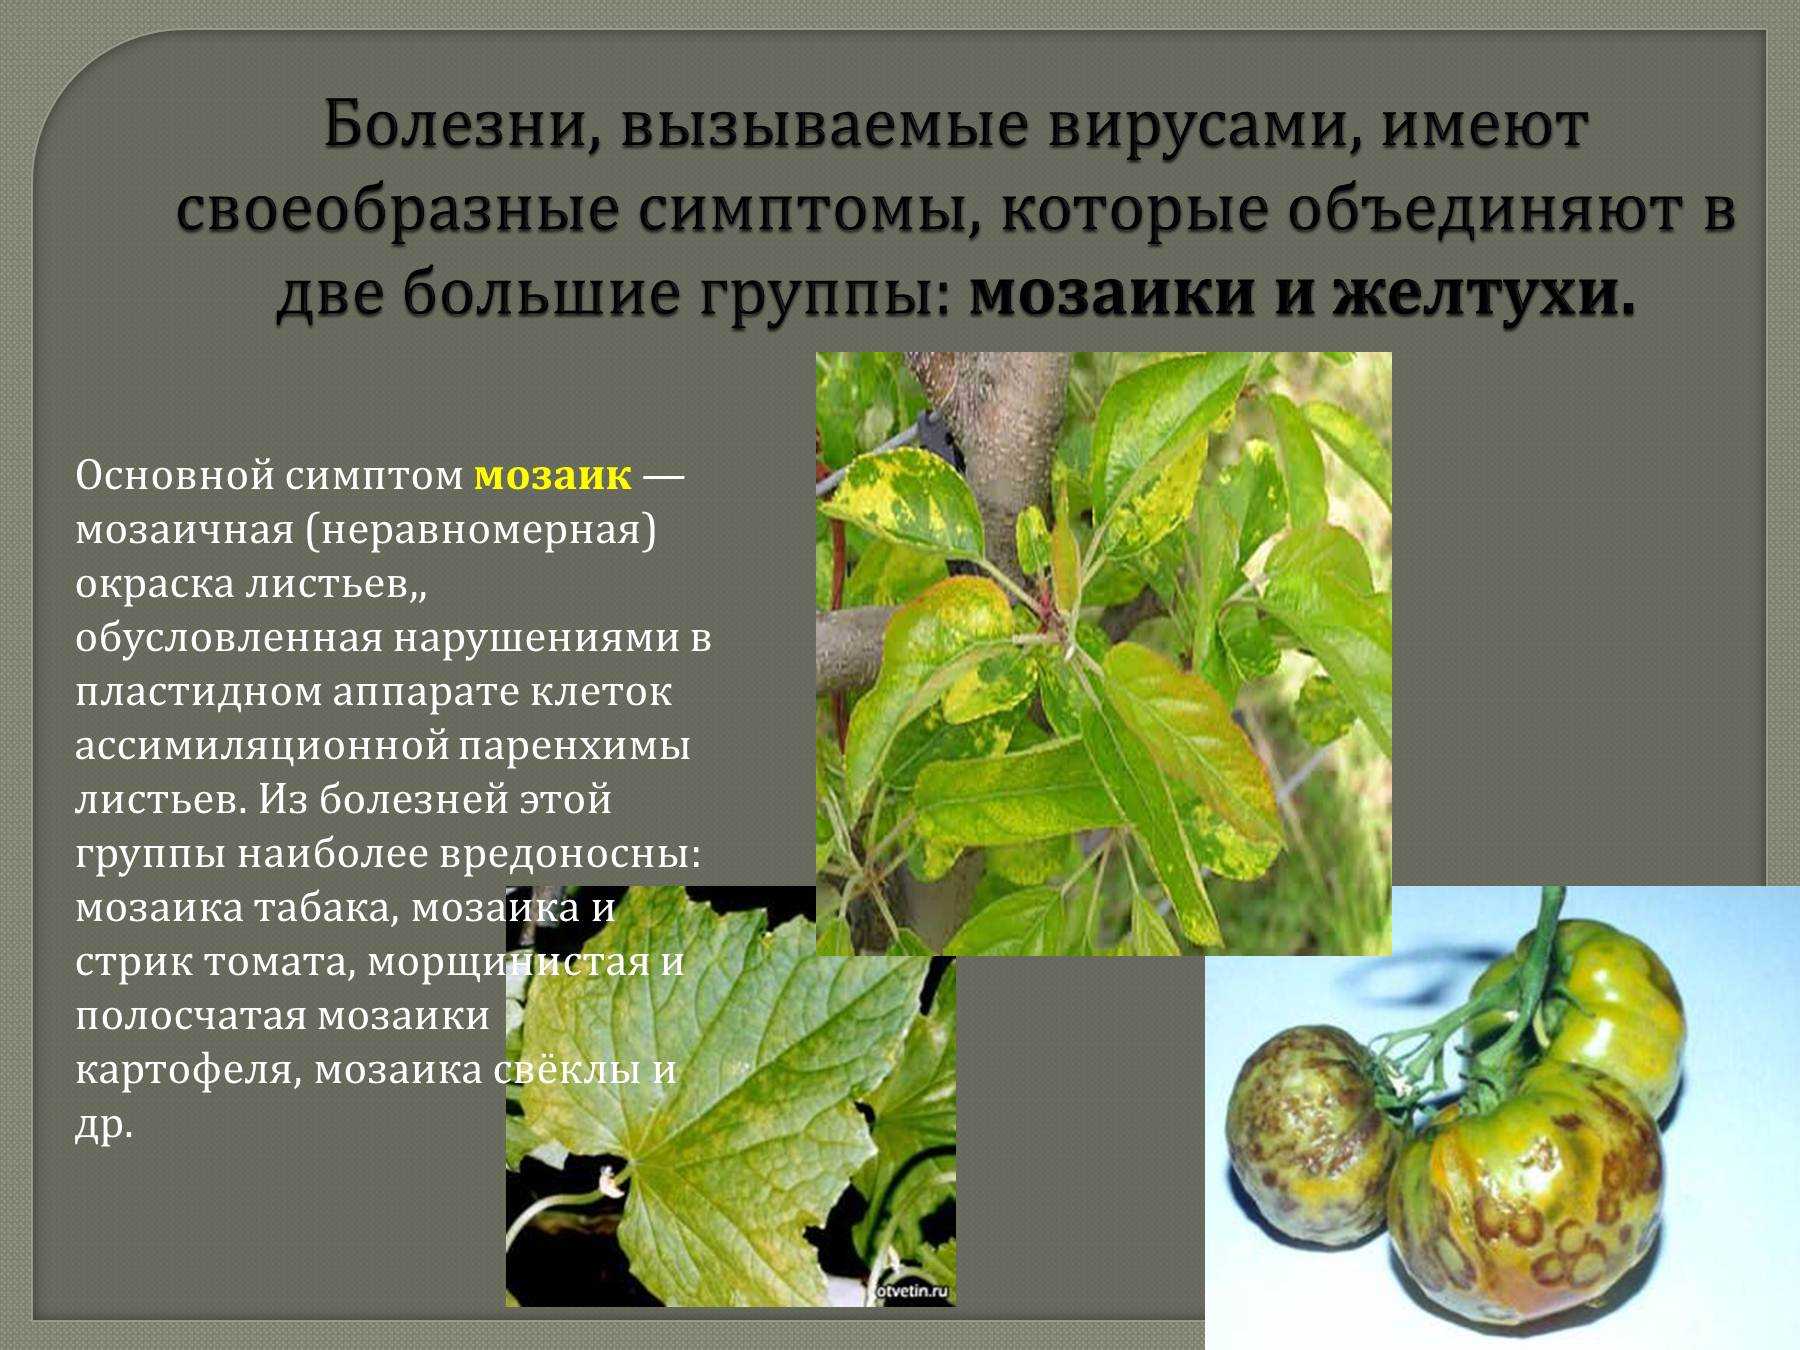 Болезни и вредители декоративных растений